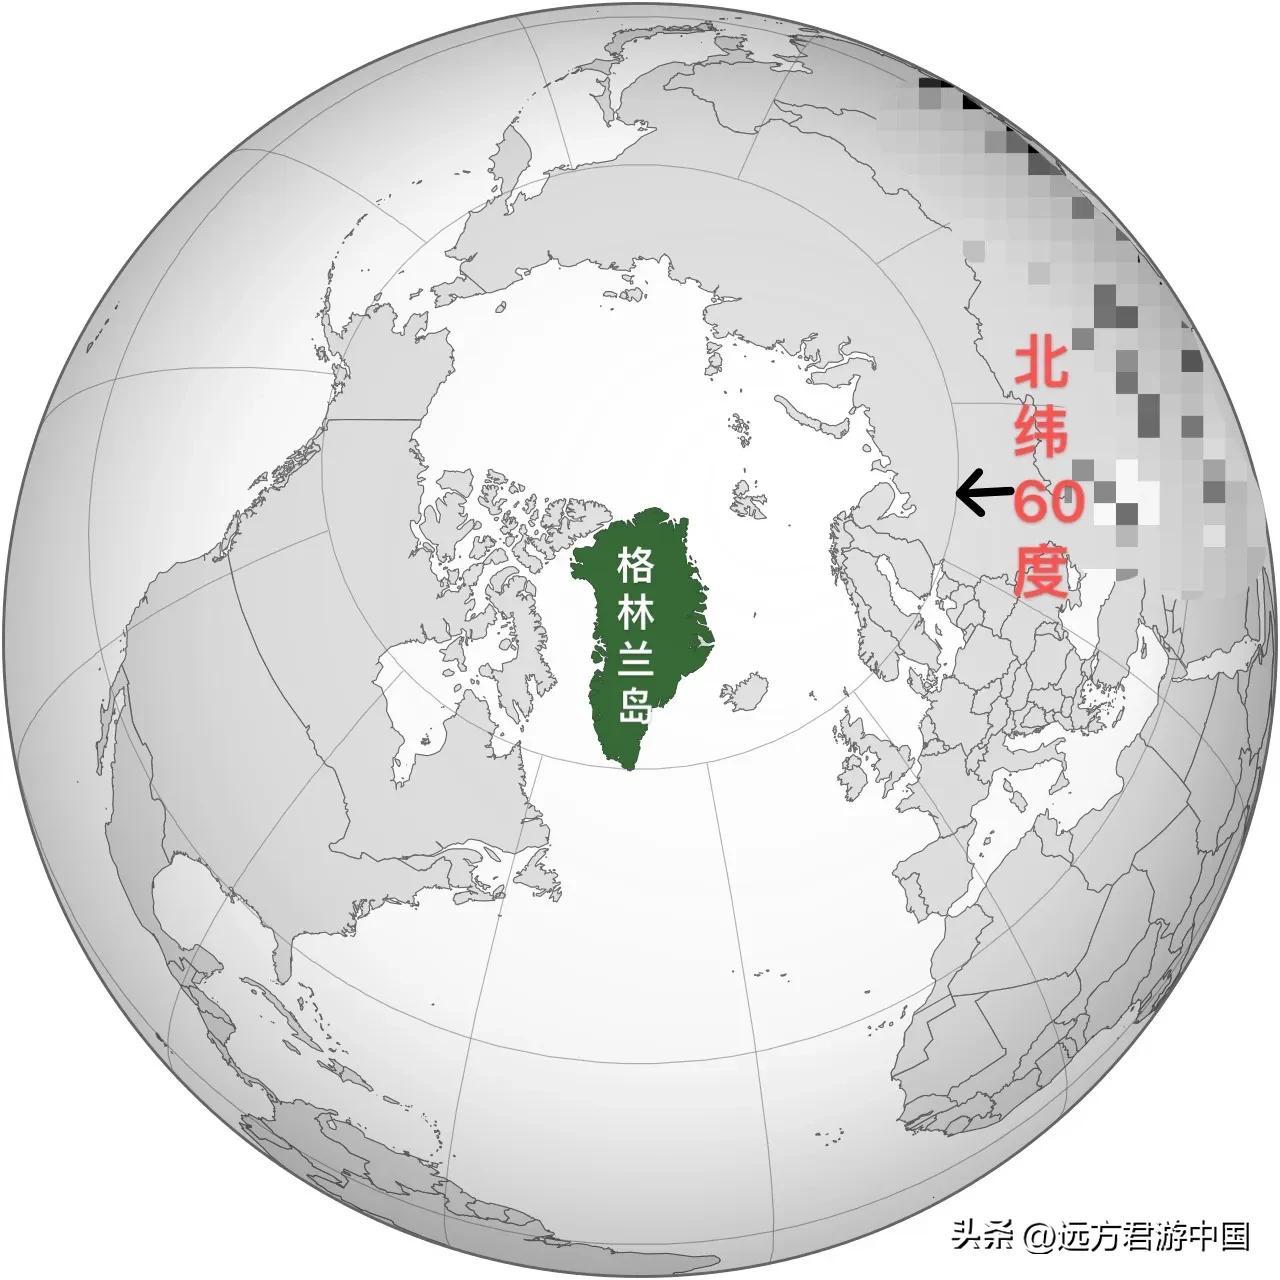 大陆是什么意思？从世界最大岛说起中国大陆和内地什么意思?